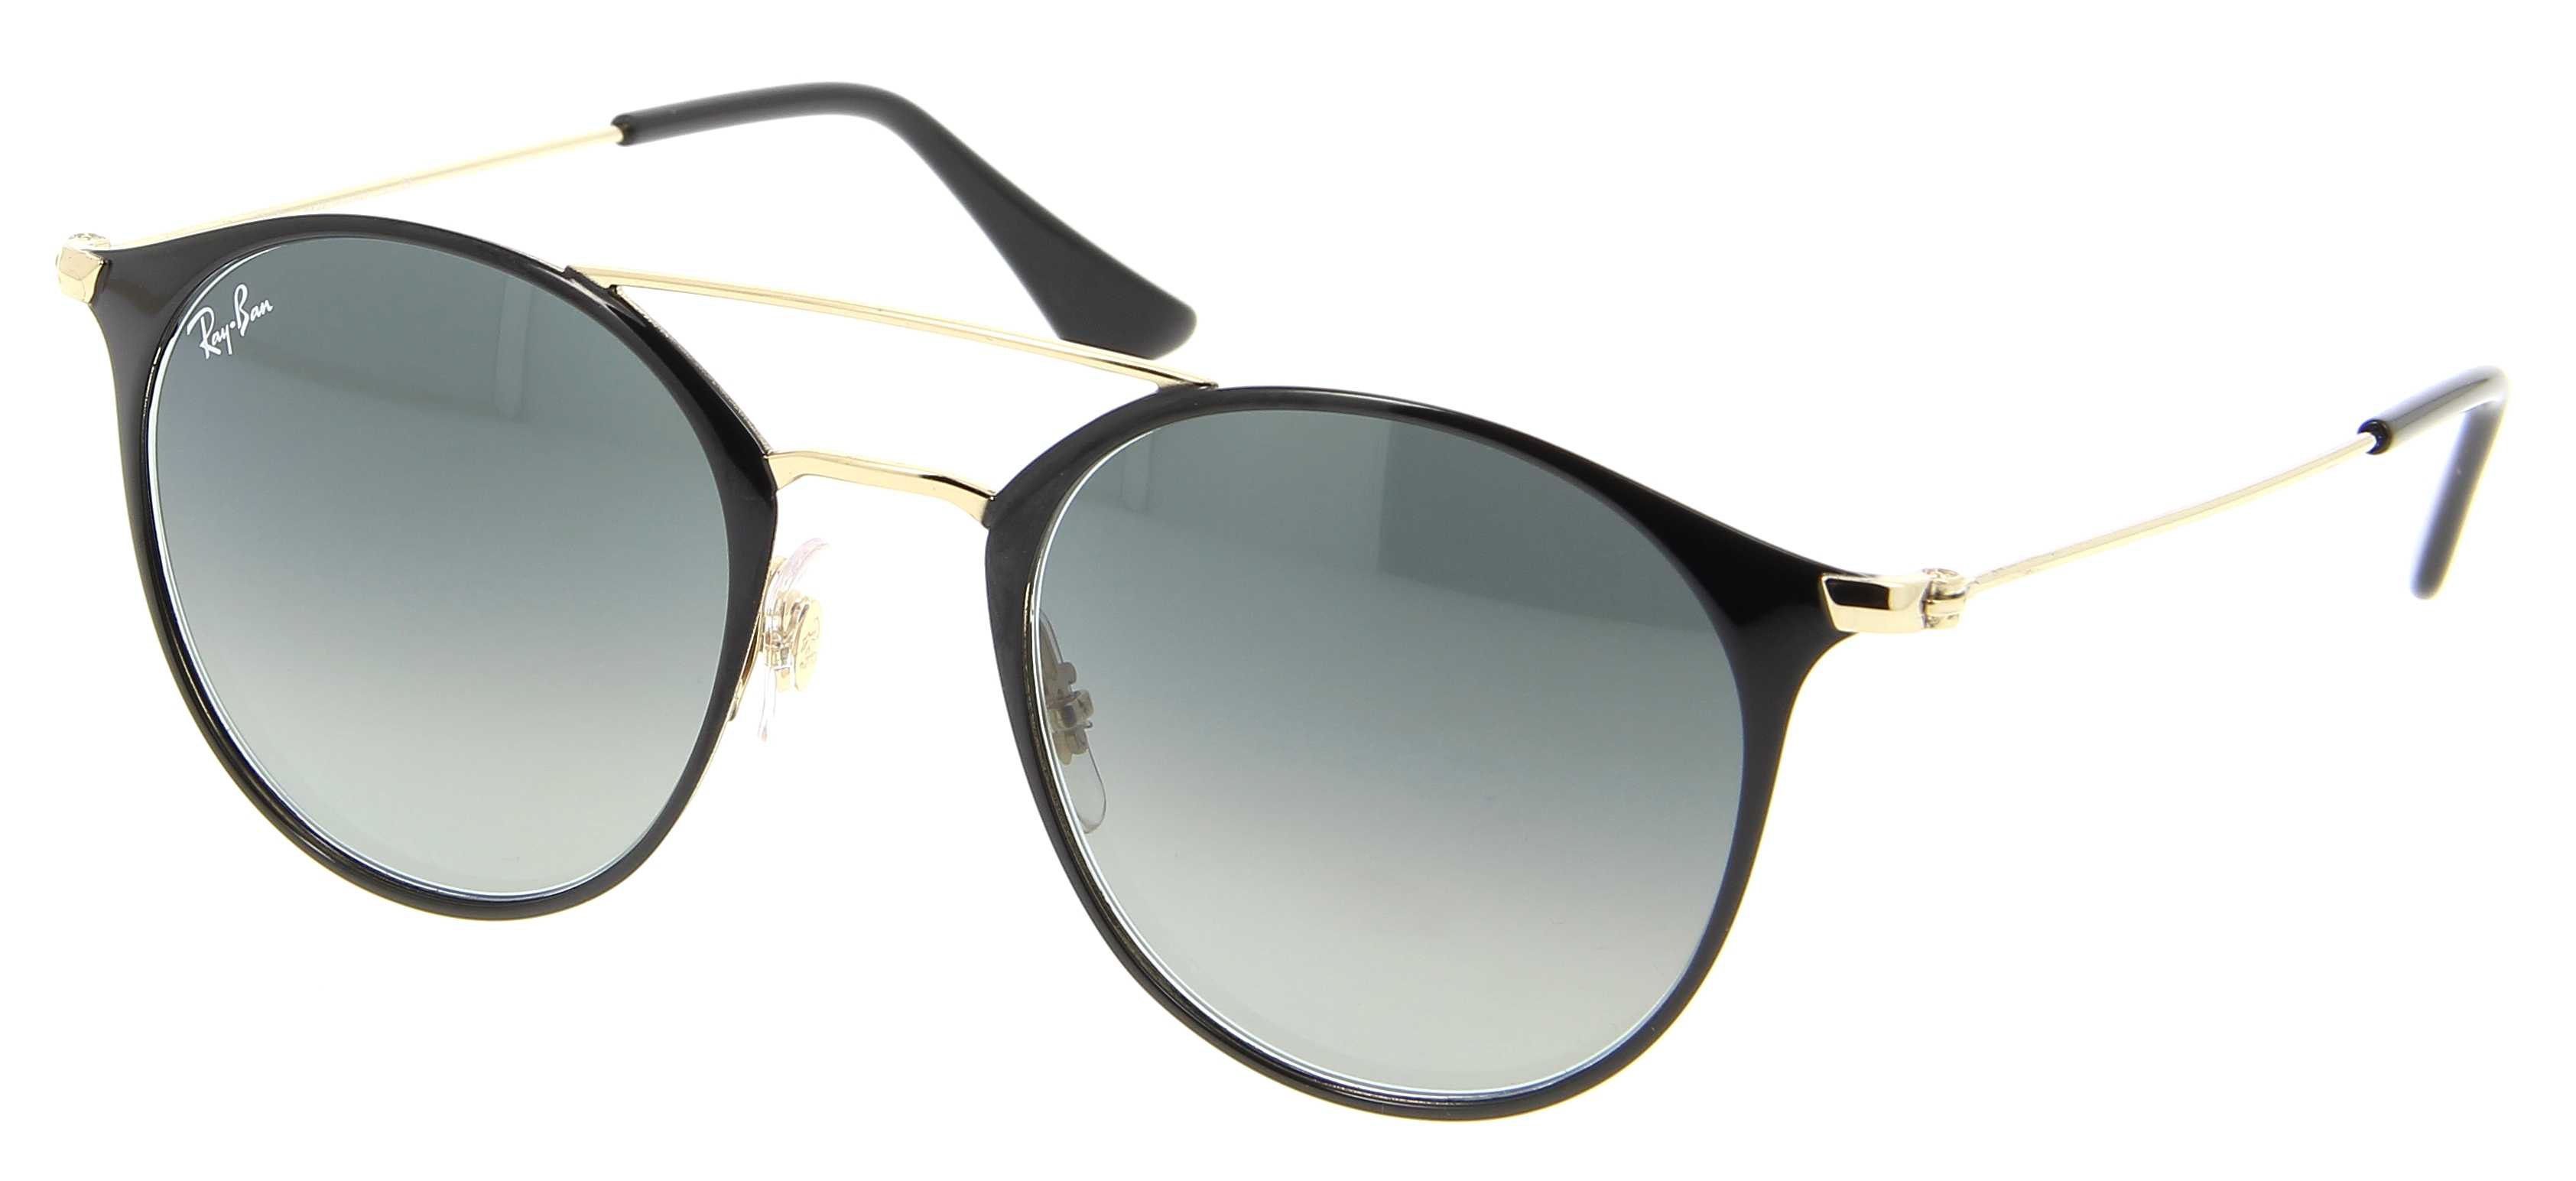 Sunglasses RAY-BAN RB 3546 187/71 49/20 Unisex noir Round Full Frame  Glasses trendy 49mmx20mm 136$CA